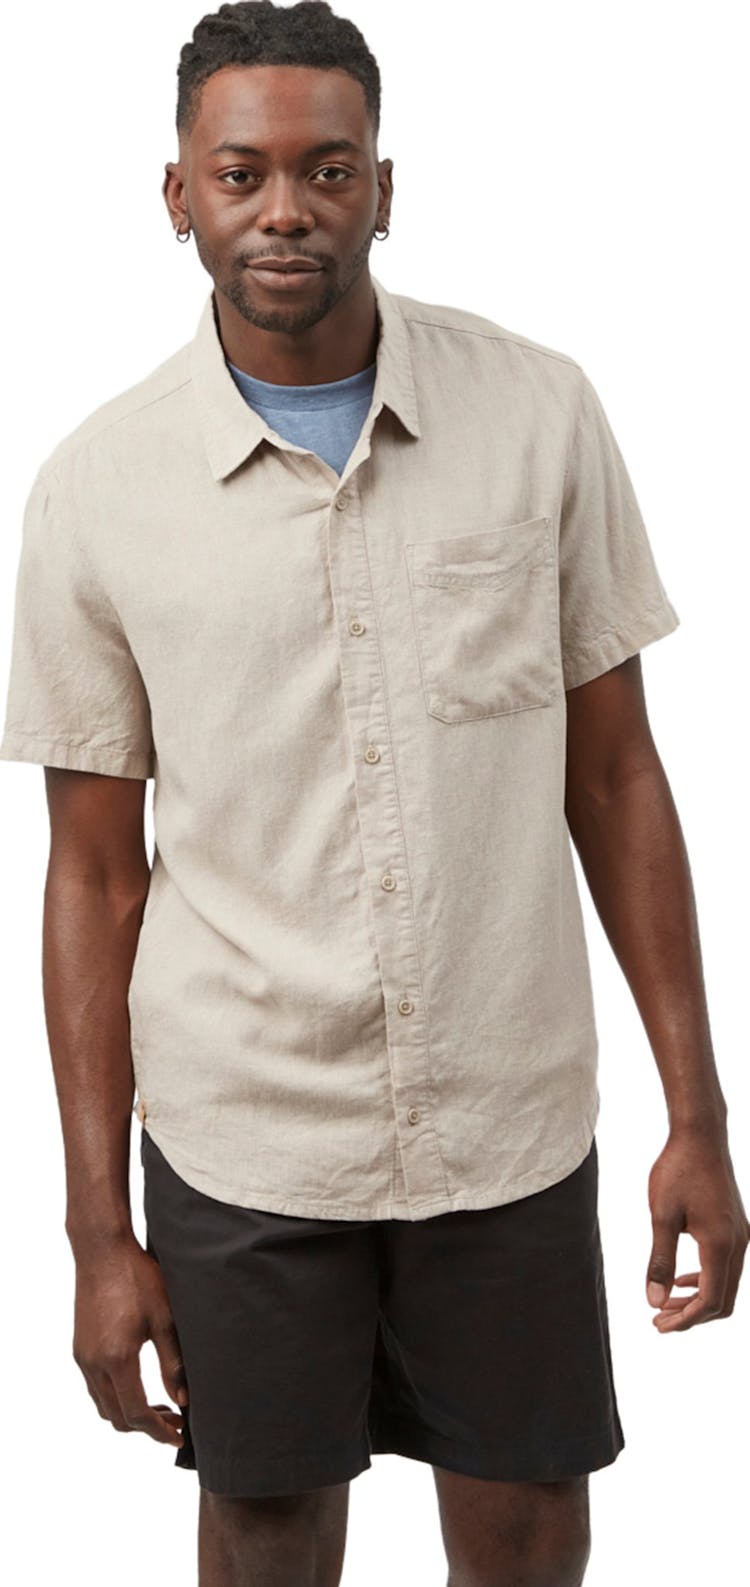 Numéro de l'image de la galerie de produits 1 pour le produit Chemise boutonnée à manches courtes en chanvre - Homme